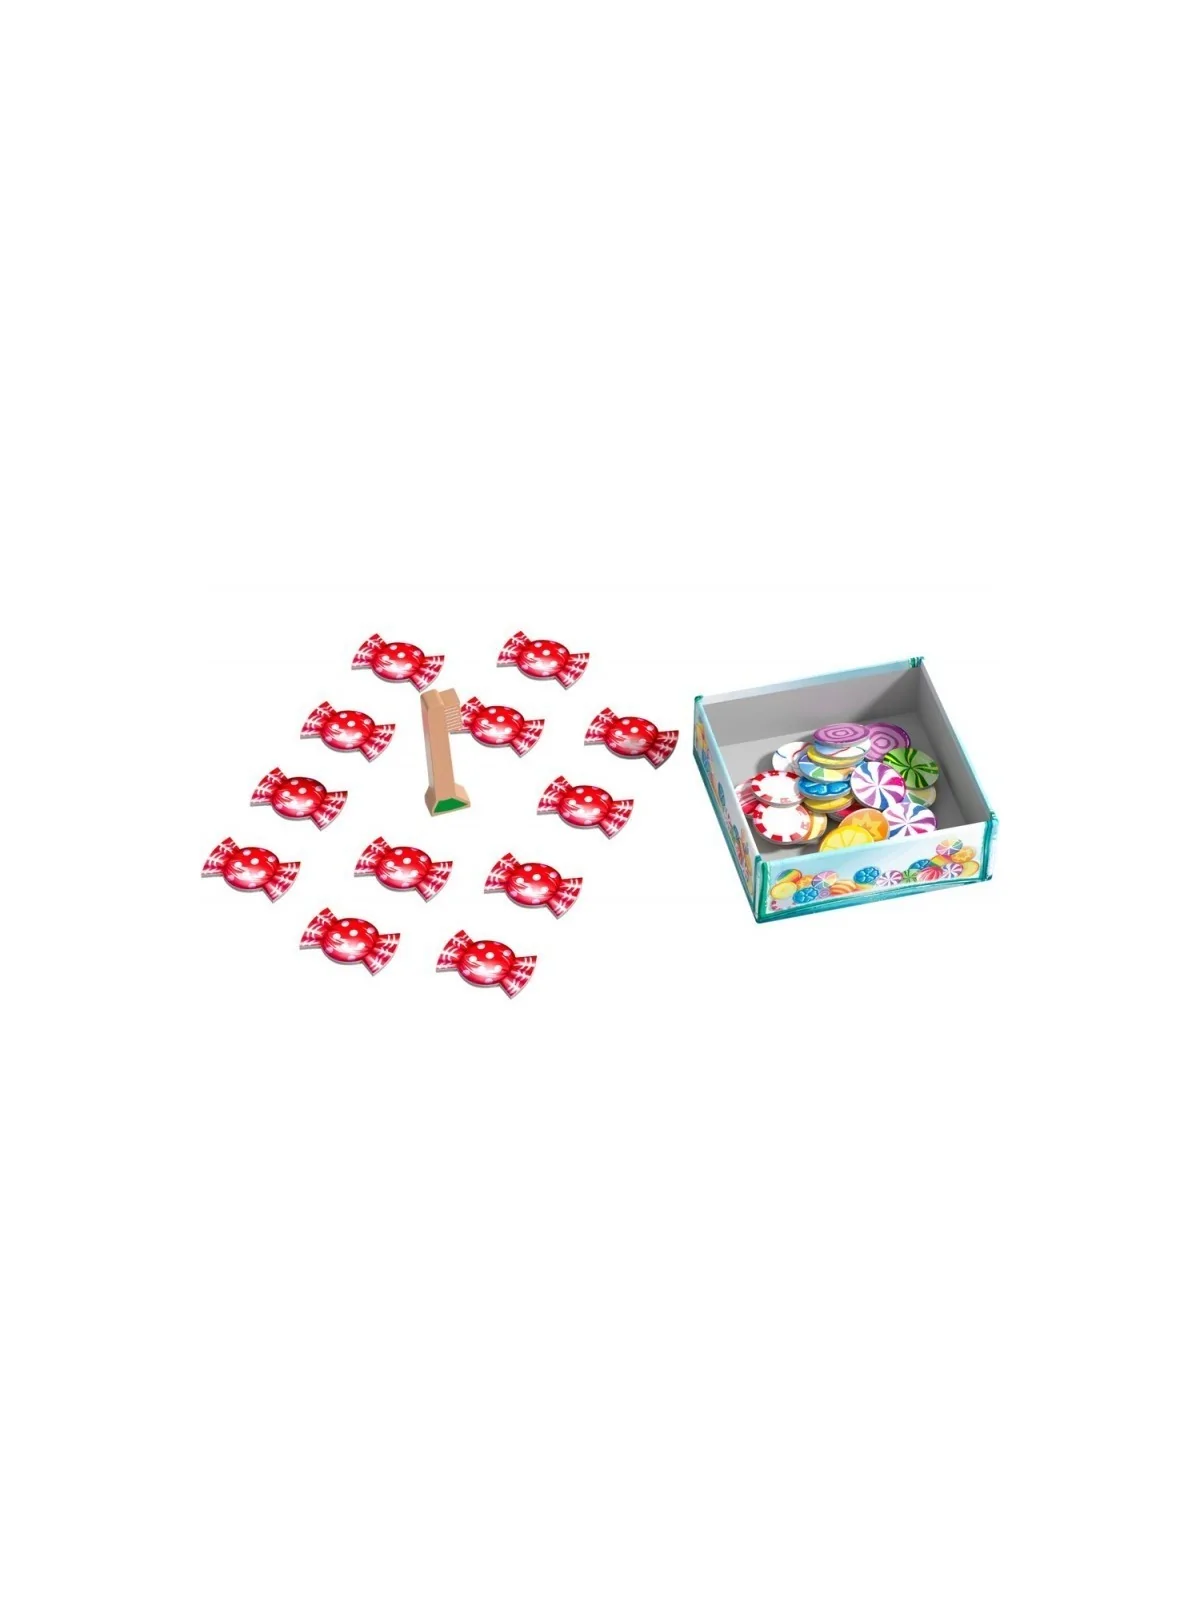 Comprar Candy Party barato al mejor precio 6,29 € de Haba